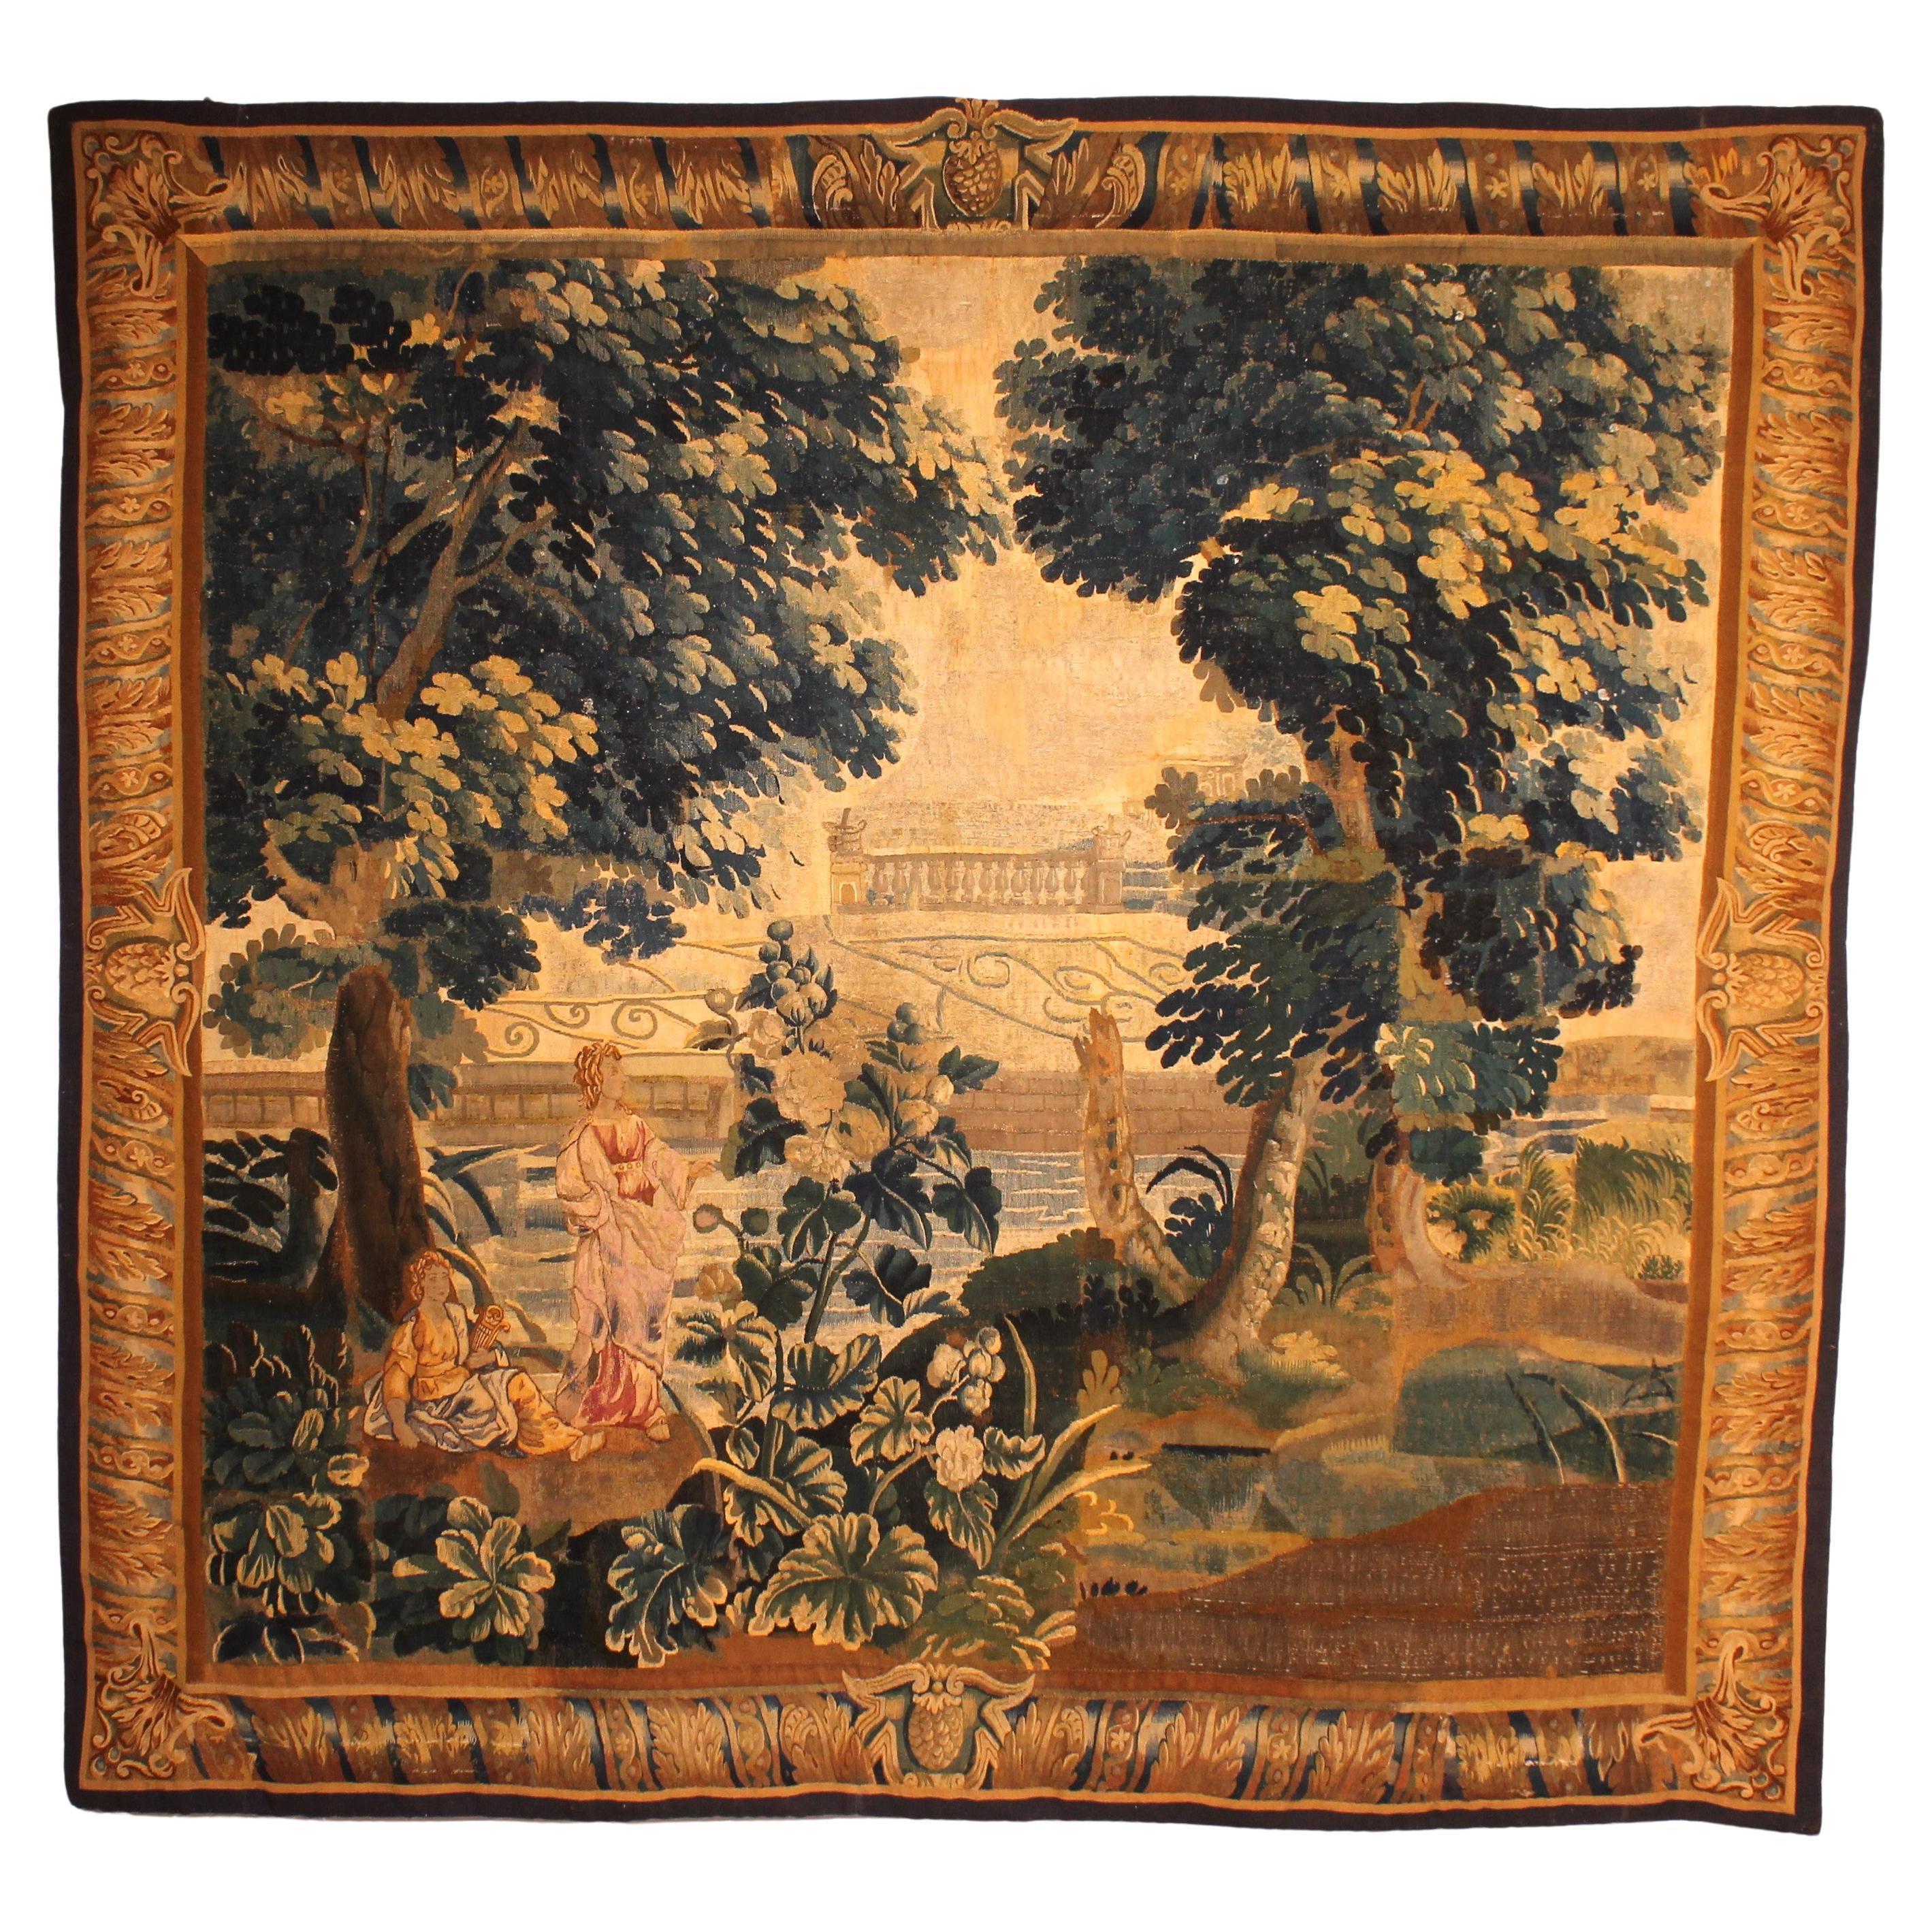 Wandteppich aus Brüssel aus dem 18. Jahrhundert